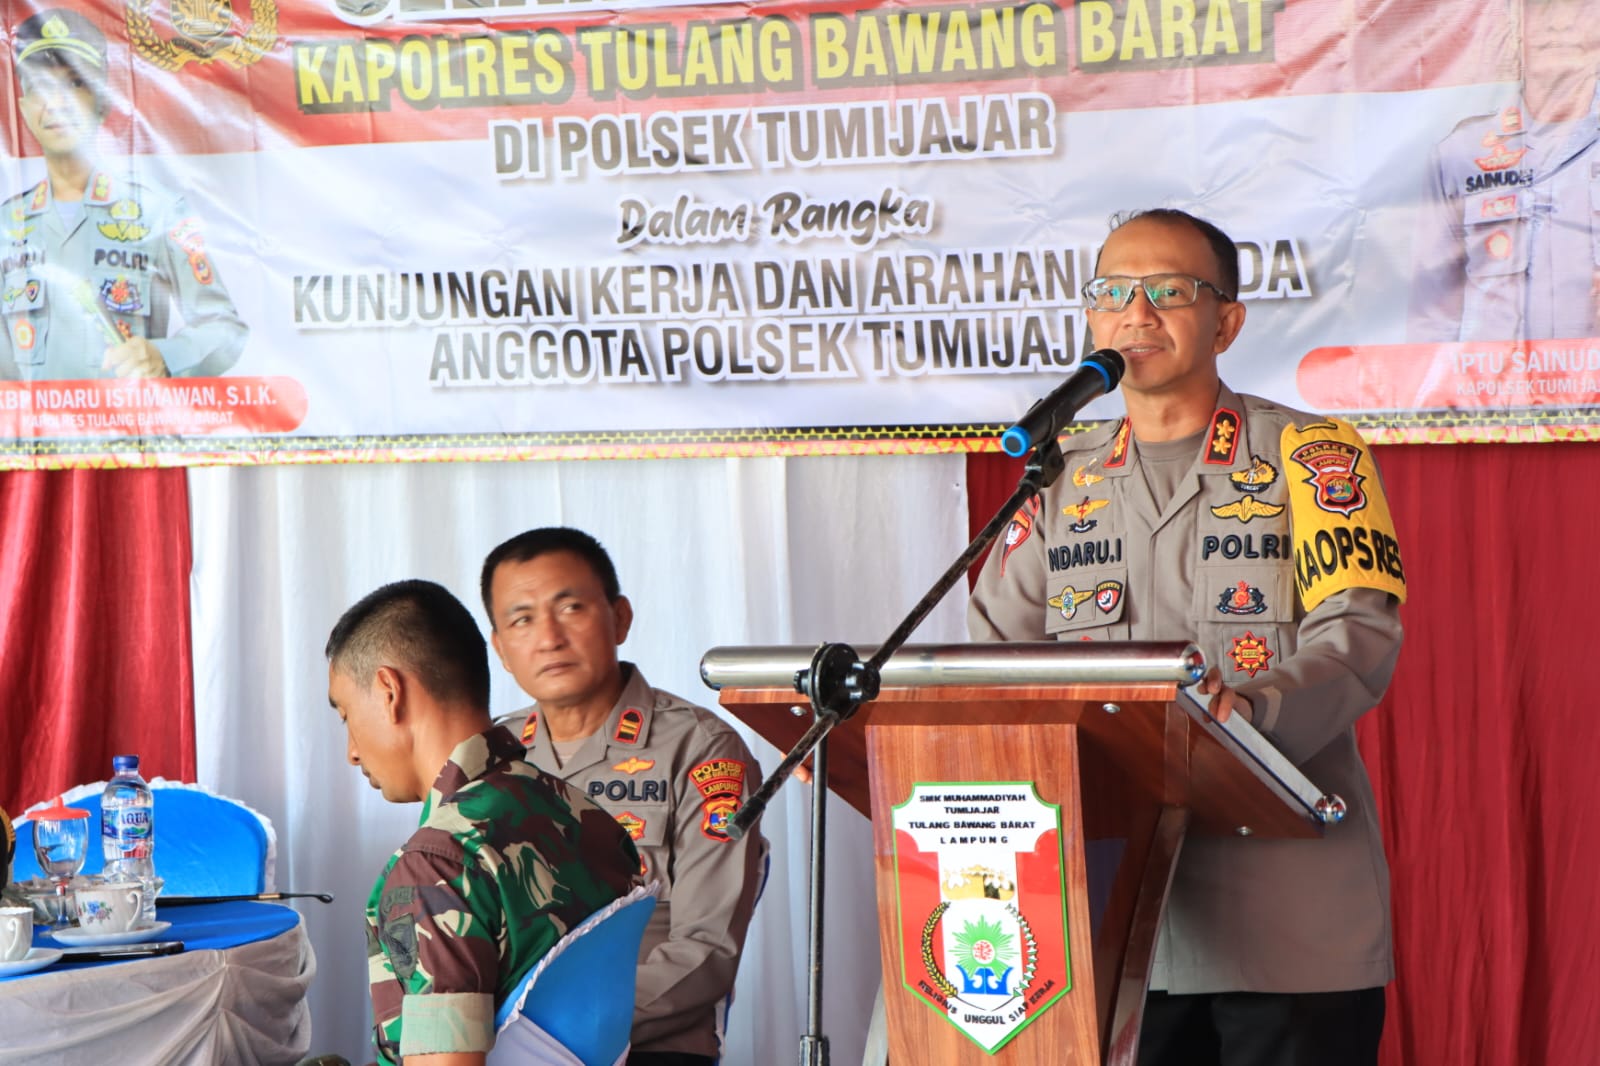 Kunjungan Kerja Kapolres dan Ketua Bhayangkari Cabang Polres Tulang Bawang Barat ke Polsek Tumijajar.